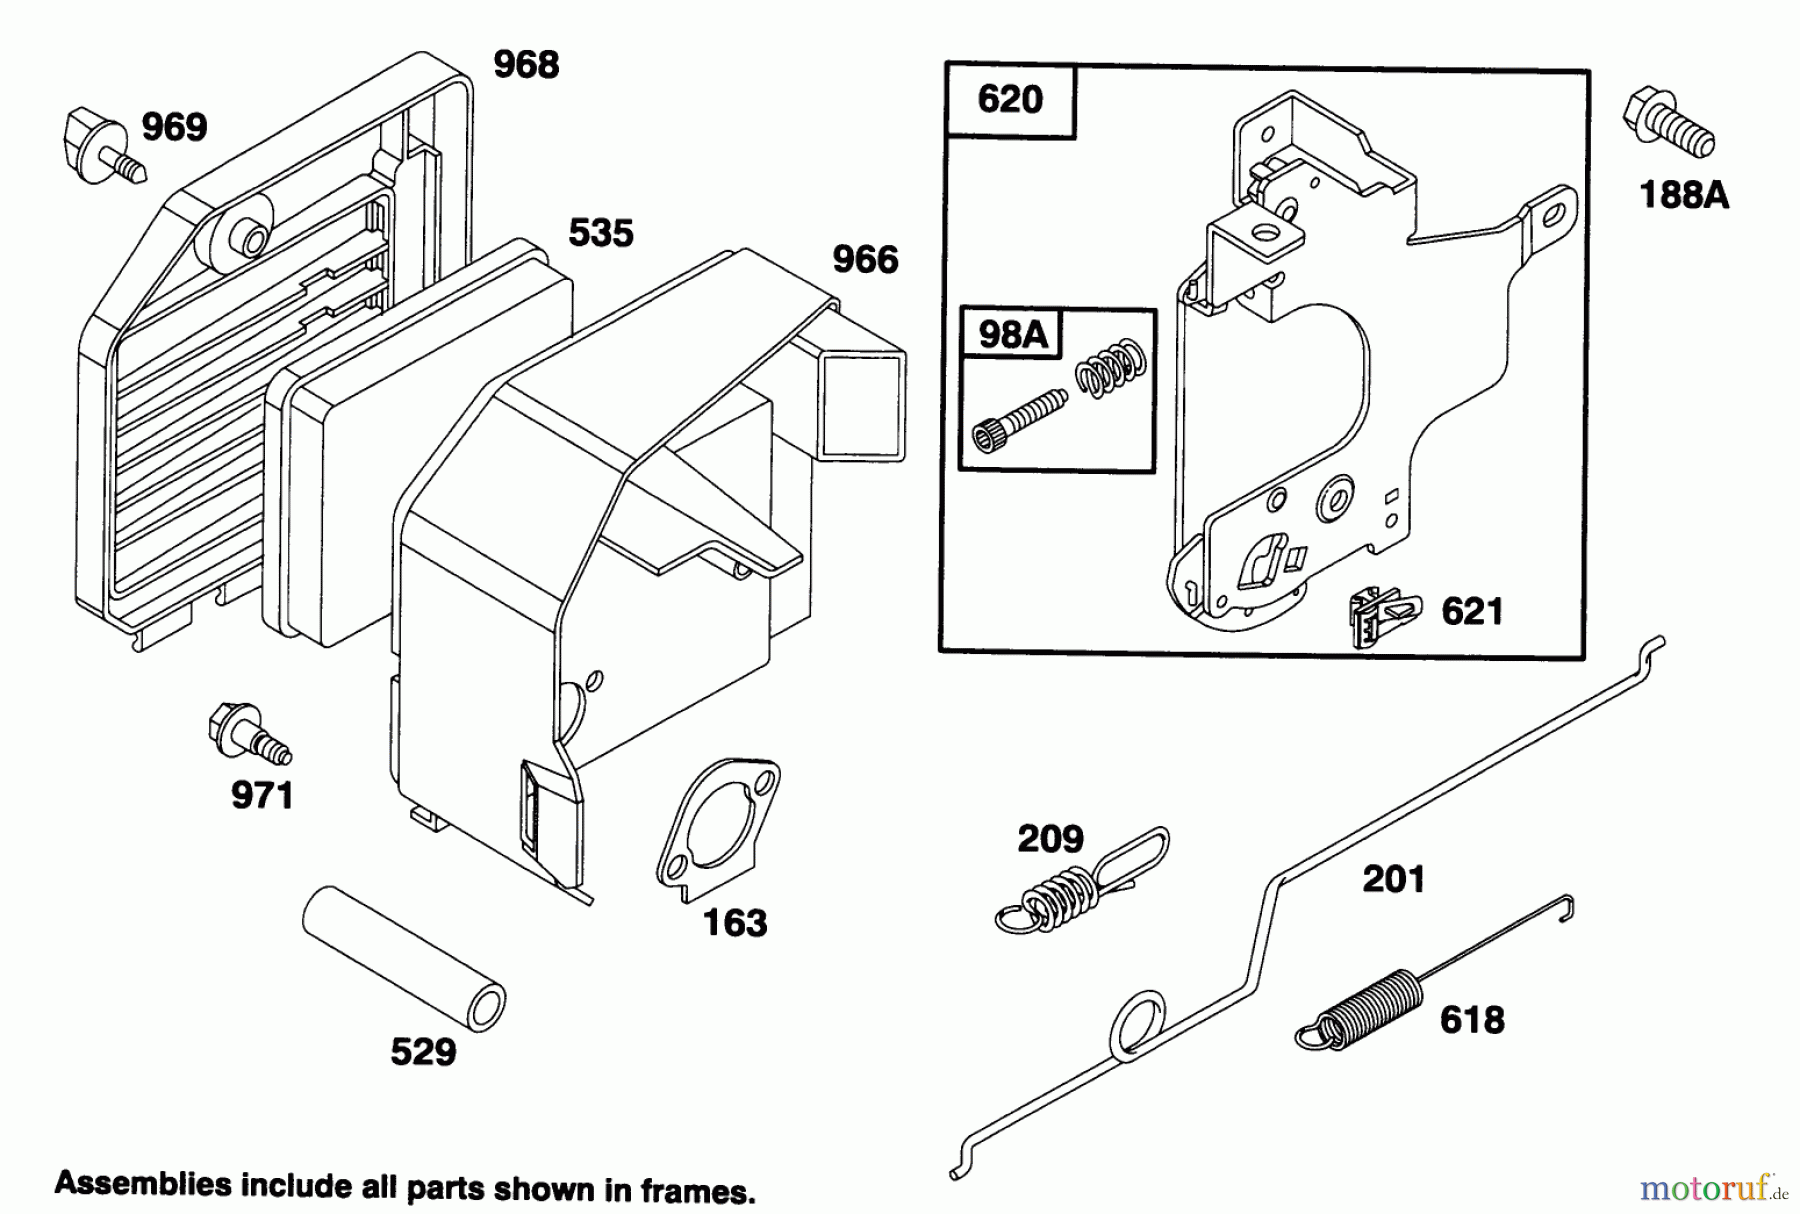  Toro Neu Mowers, Walk-Behind Seite 2 26630B - Toro Lawnmower, 1994 (4900001-4999999) ENGINE GTS 150 #4